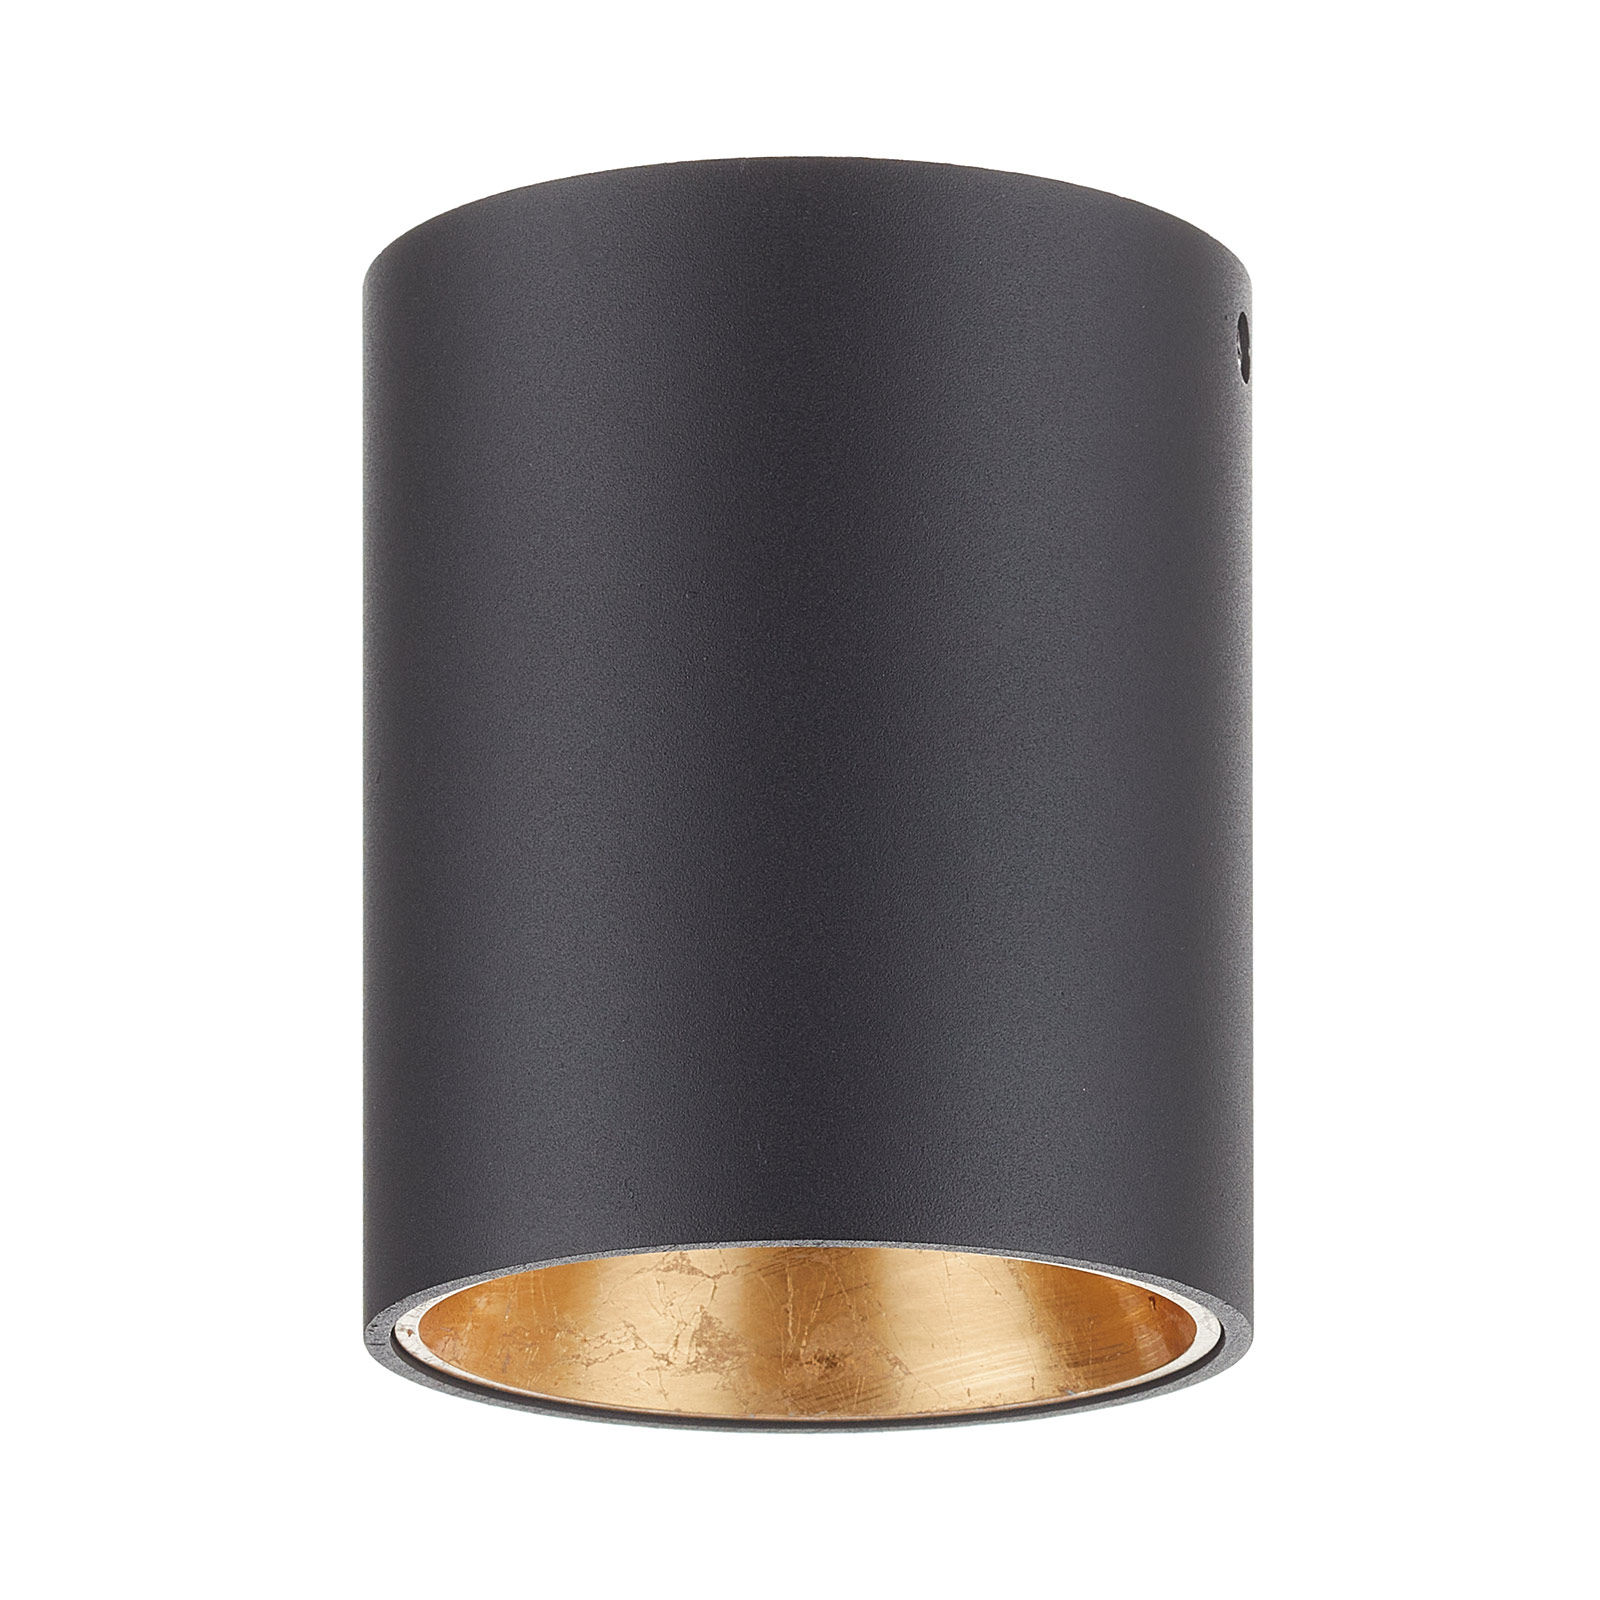 LED-Deckenlampe Polasso rund, schwarz-gold